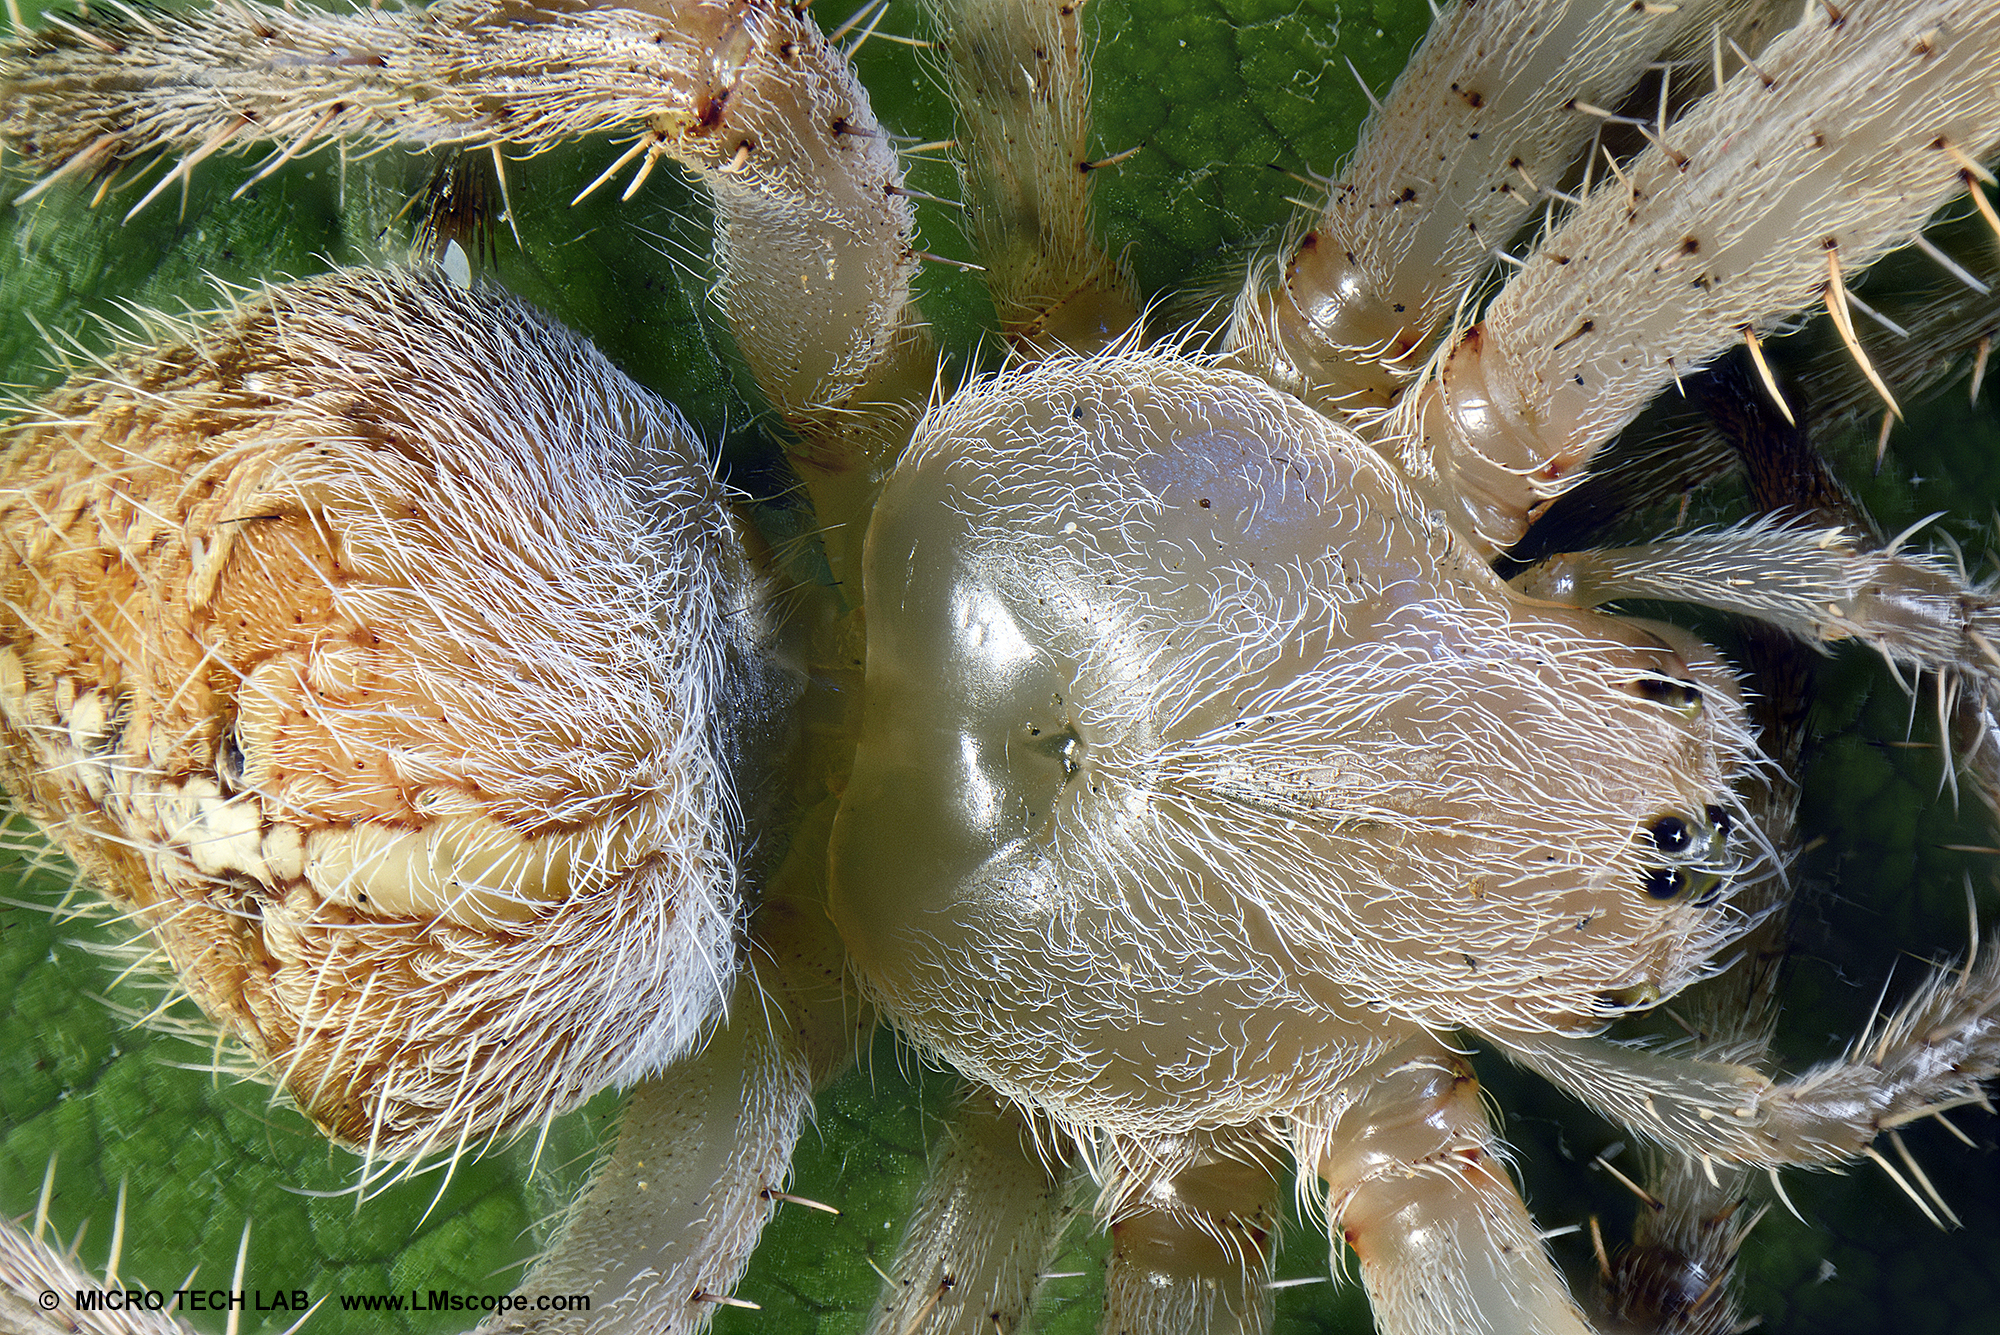 Garten-Kreuzspinne (Araneus diadematus) zweigeteilter Körper